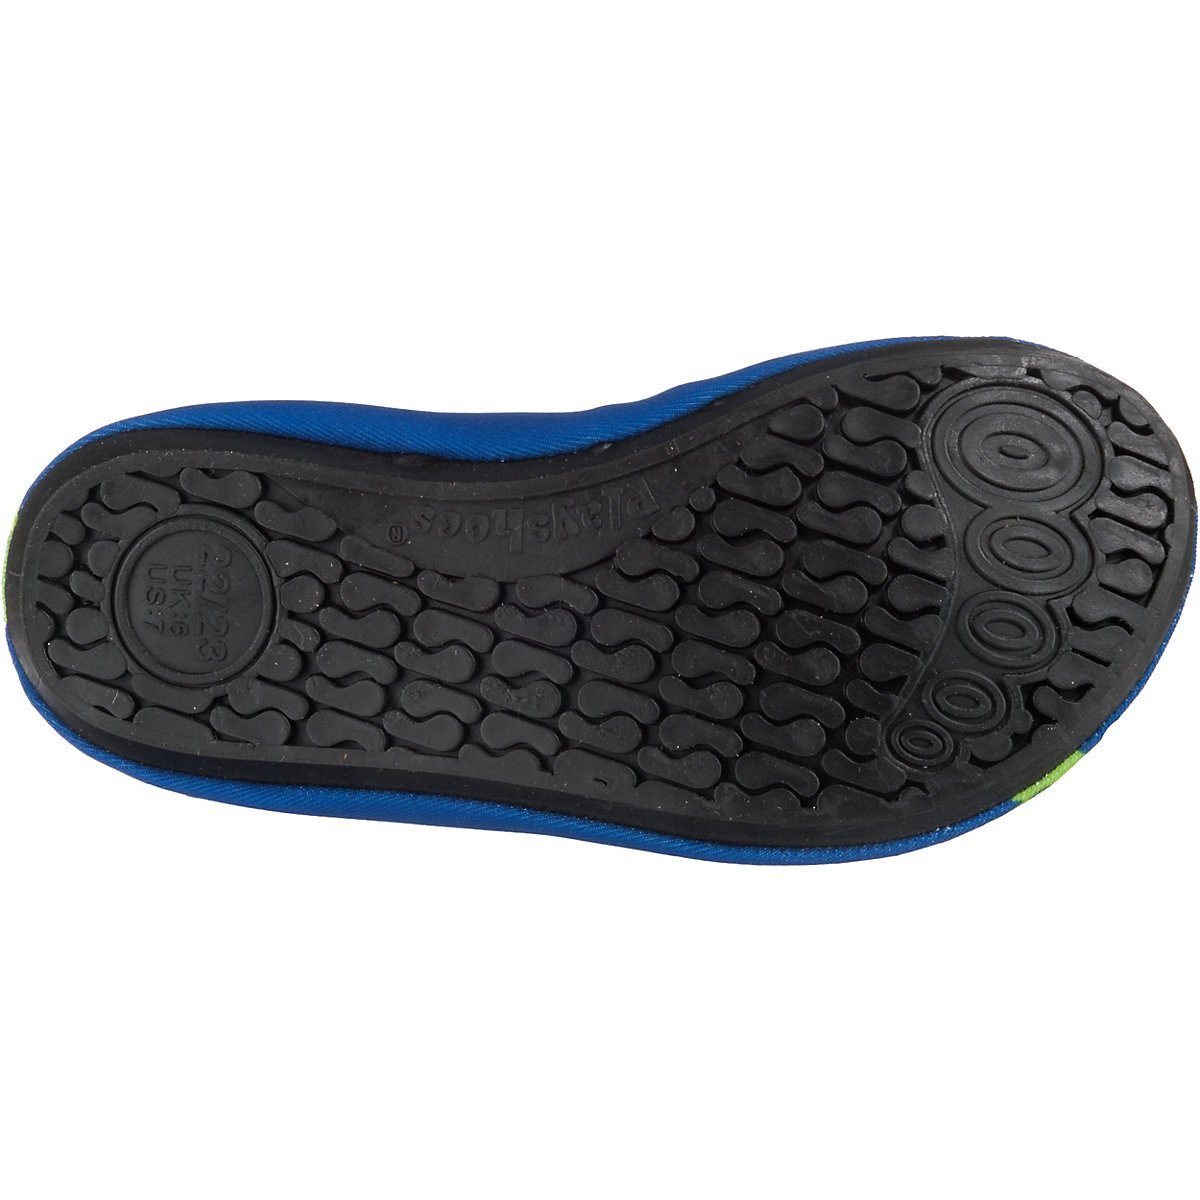 Playshoes Badeschuhe Motiv Badeschuh Wasserschuhe Barfuß-Schuh flexible Passform, rutschhemmender mit Sohle Schwimmschuhe, Krodkodil-blau